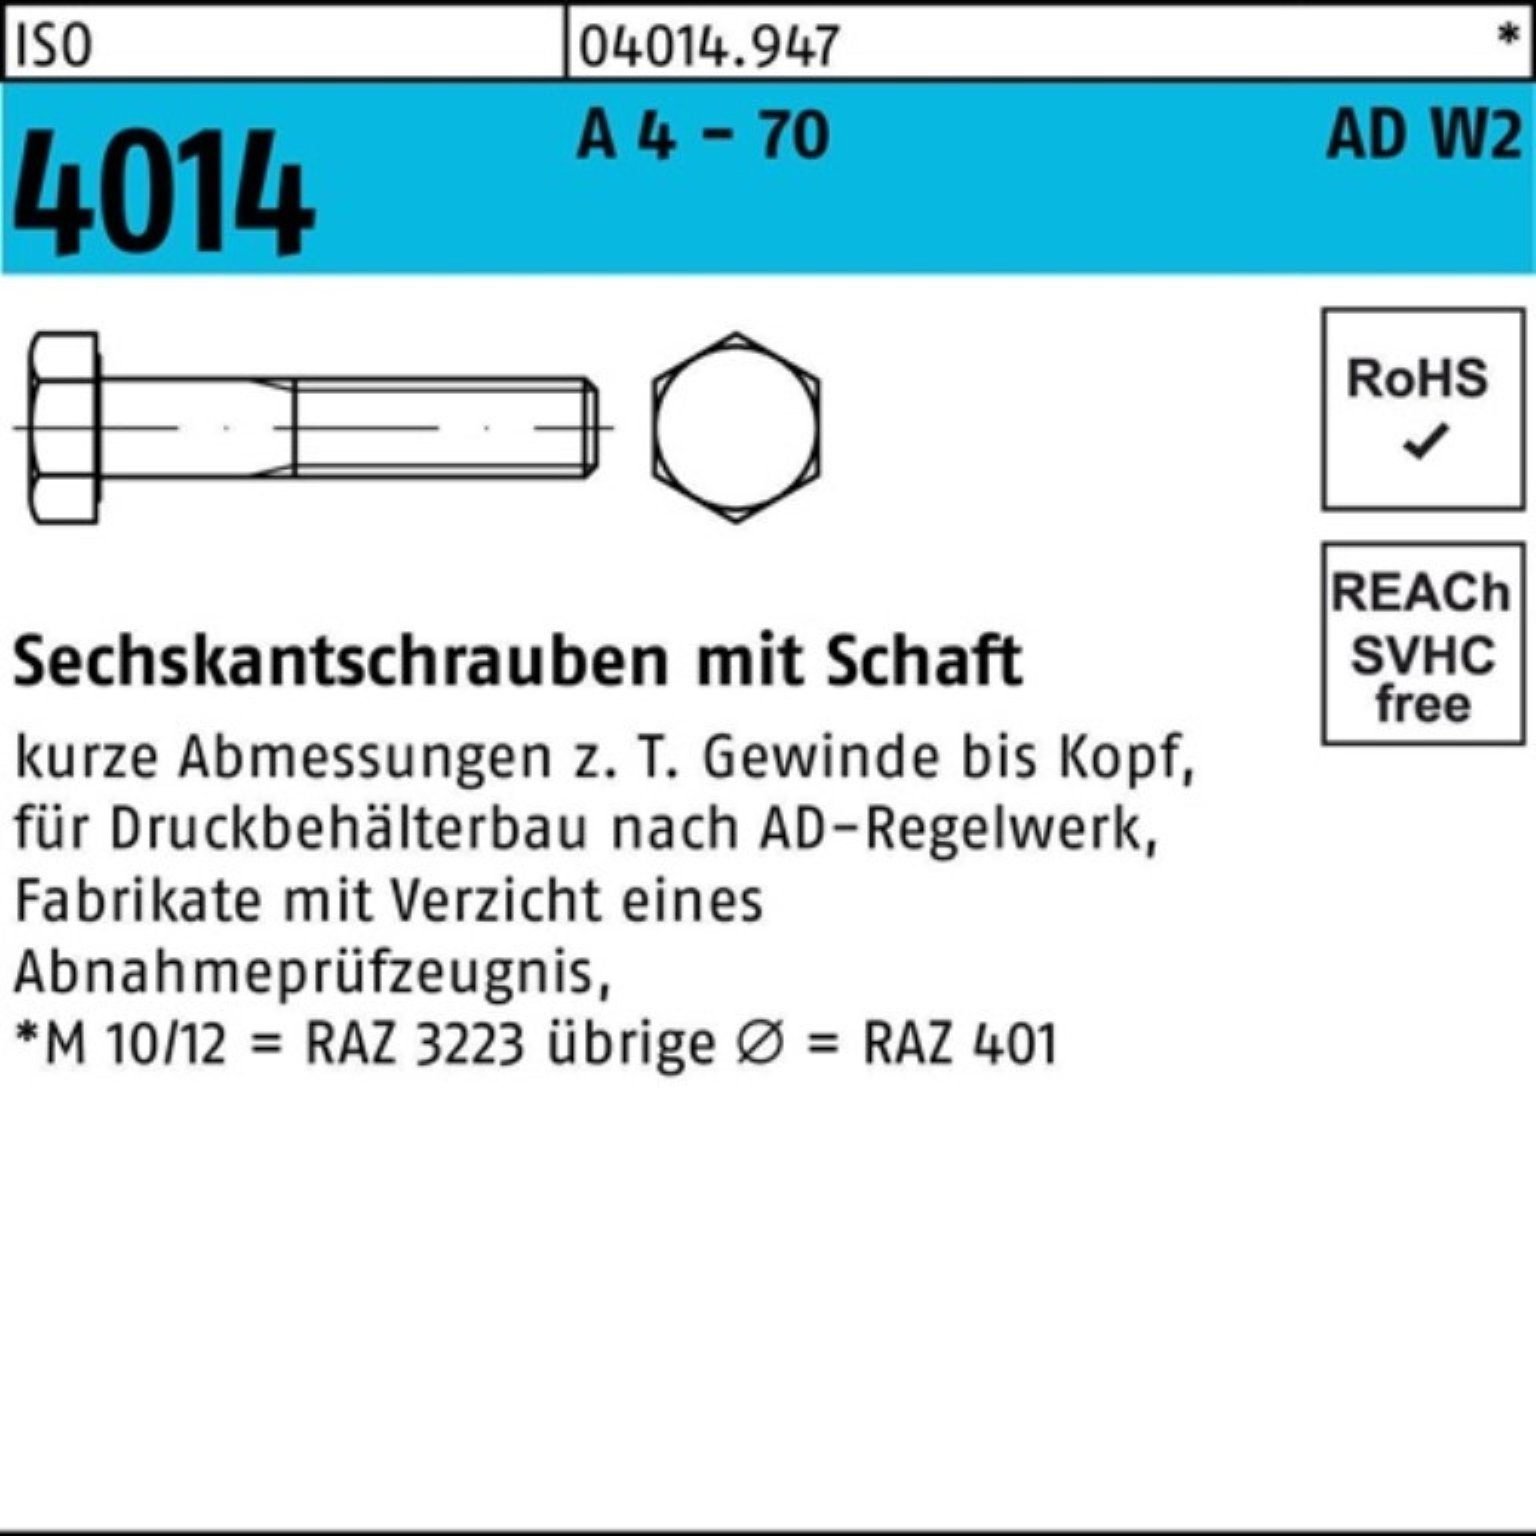 A Sechskantschraube - 50 100er 70 4 4014 ISO Sechskantschraube M10x AD-W2 10 Schaft Pack Bufab